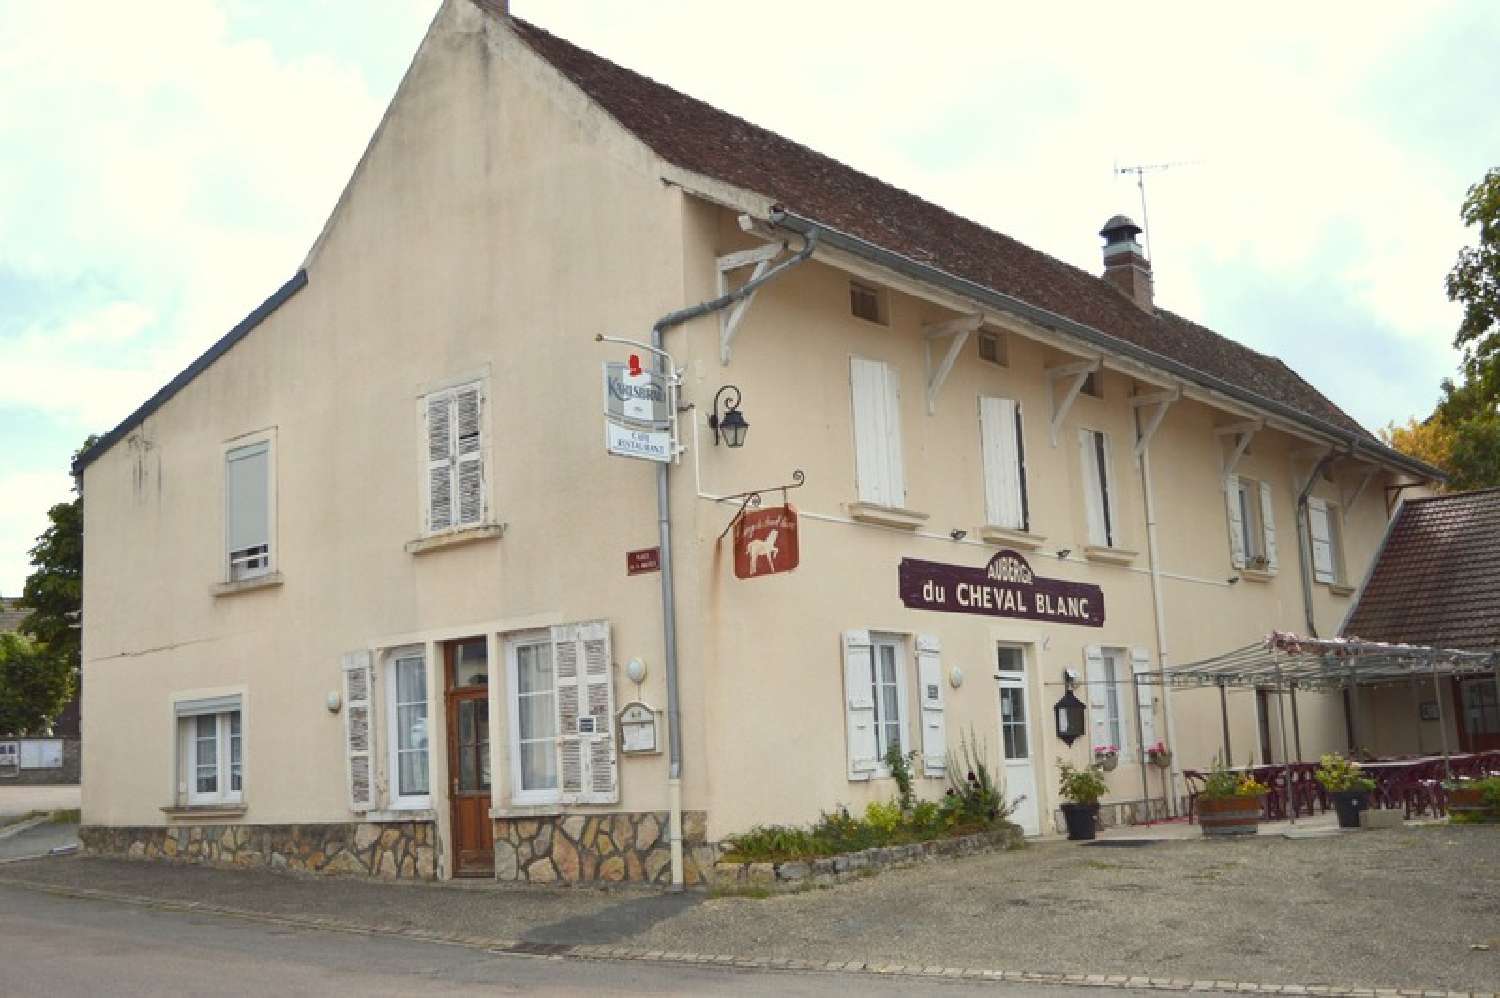 La Charmée Saône-et-Loire Restaurant Bild 6659658